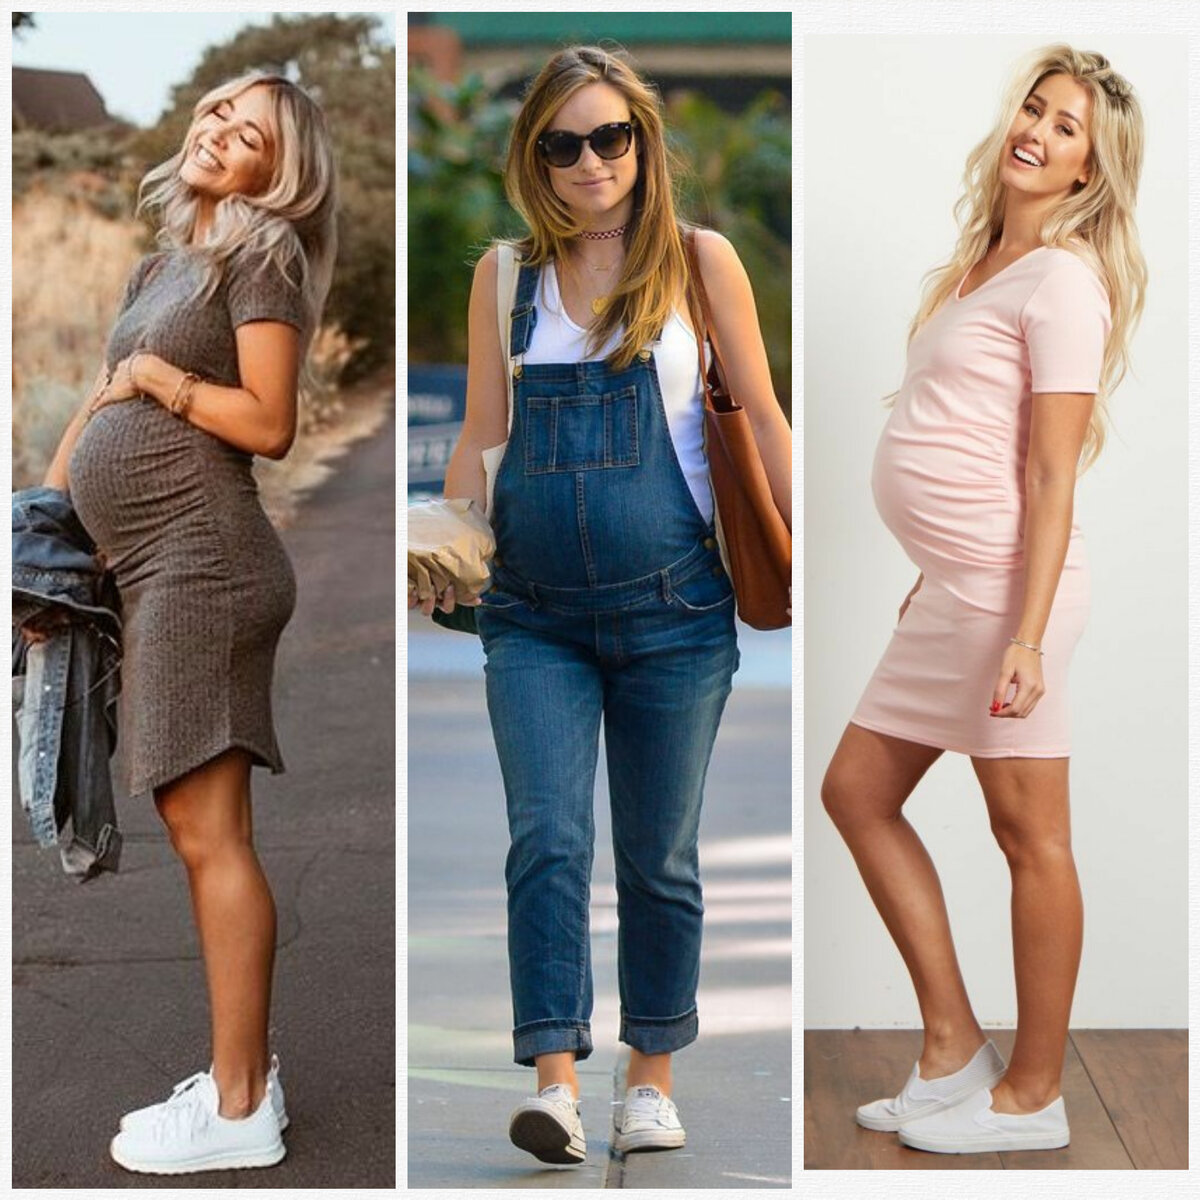 Модные и красивые модели платьев для беременных, советы по выбору